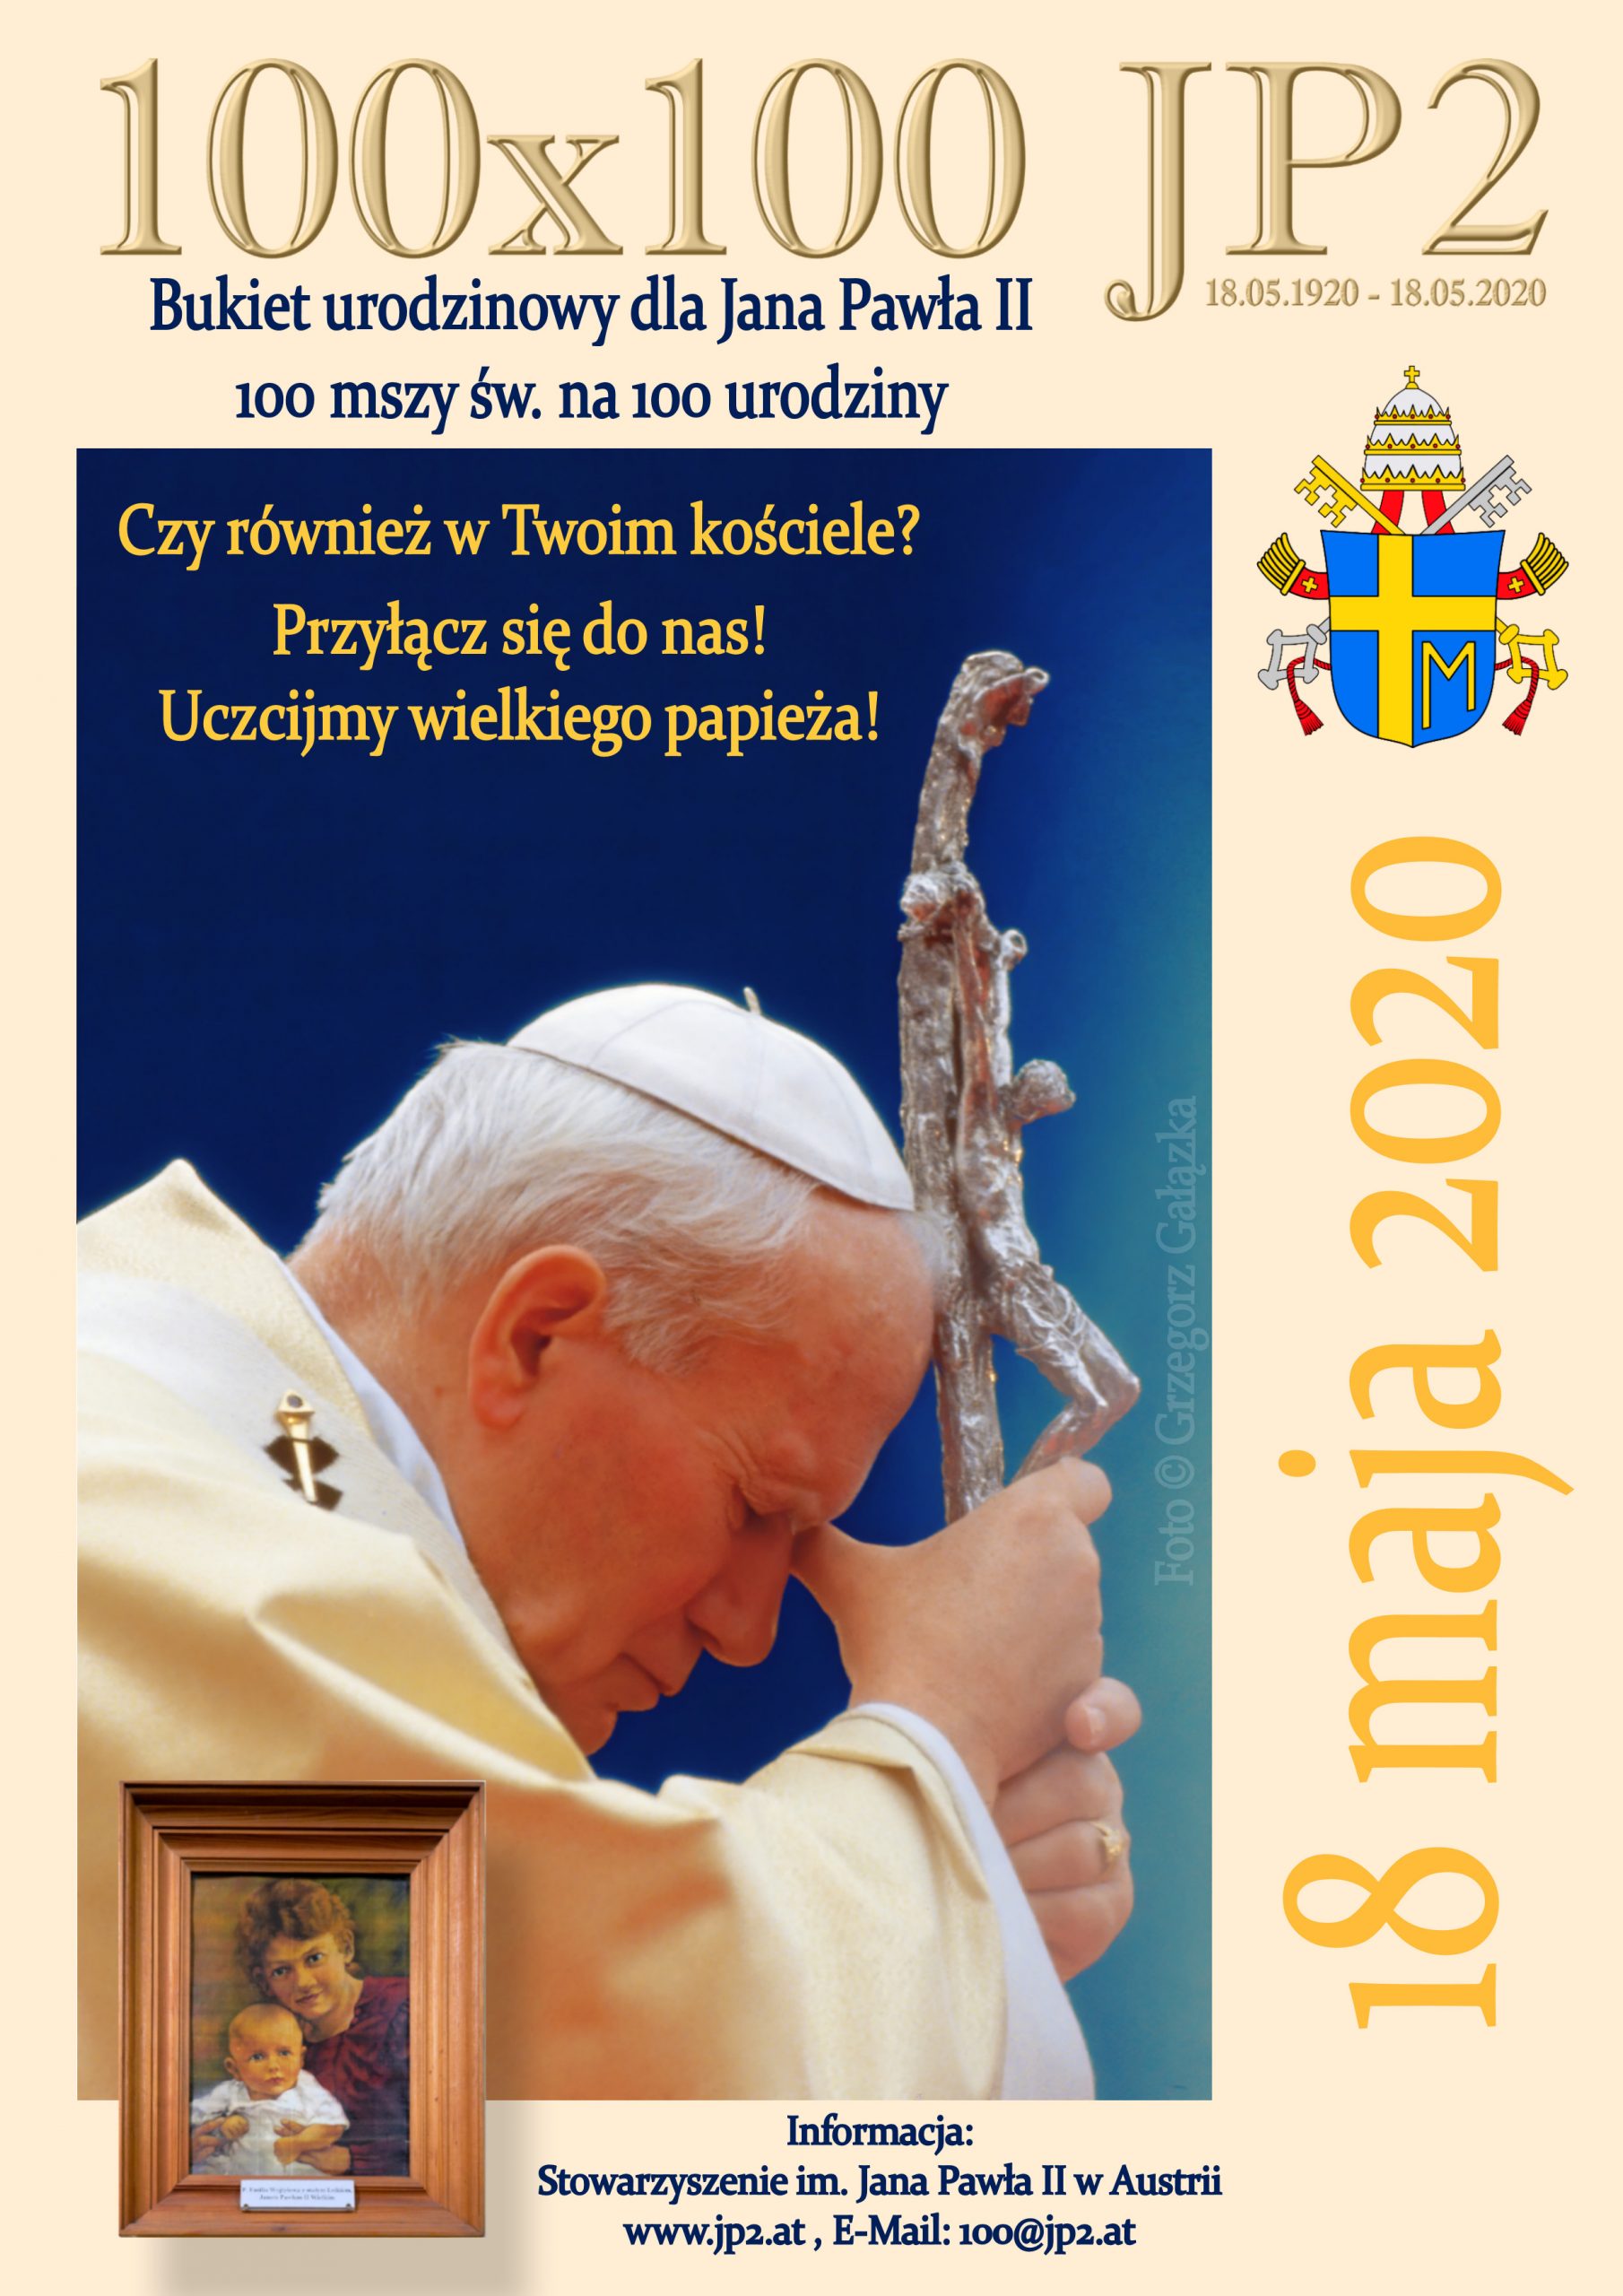 “Bukiet urodzinowy dla Św. Jana Pawła II” – Podziękowanie